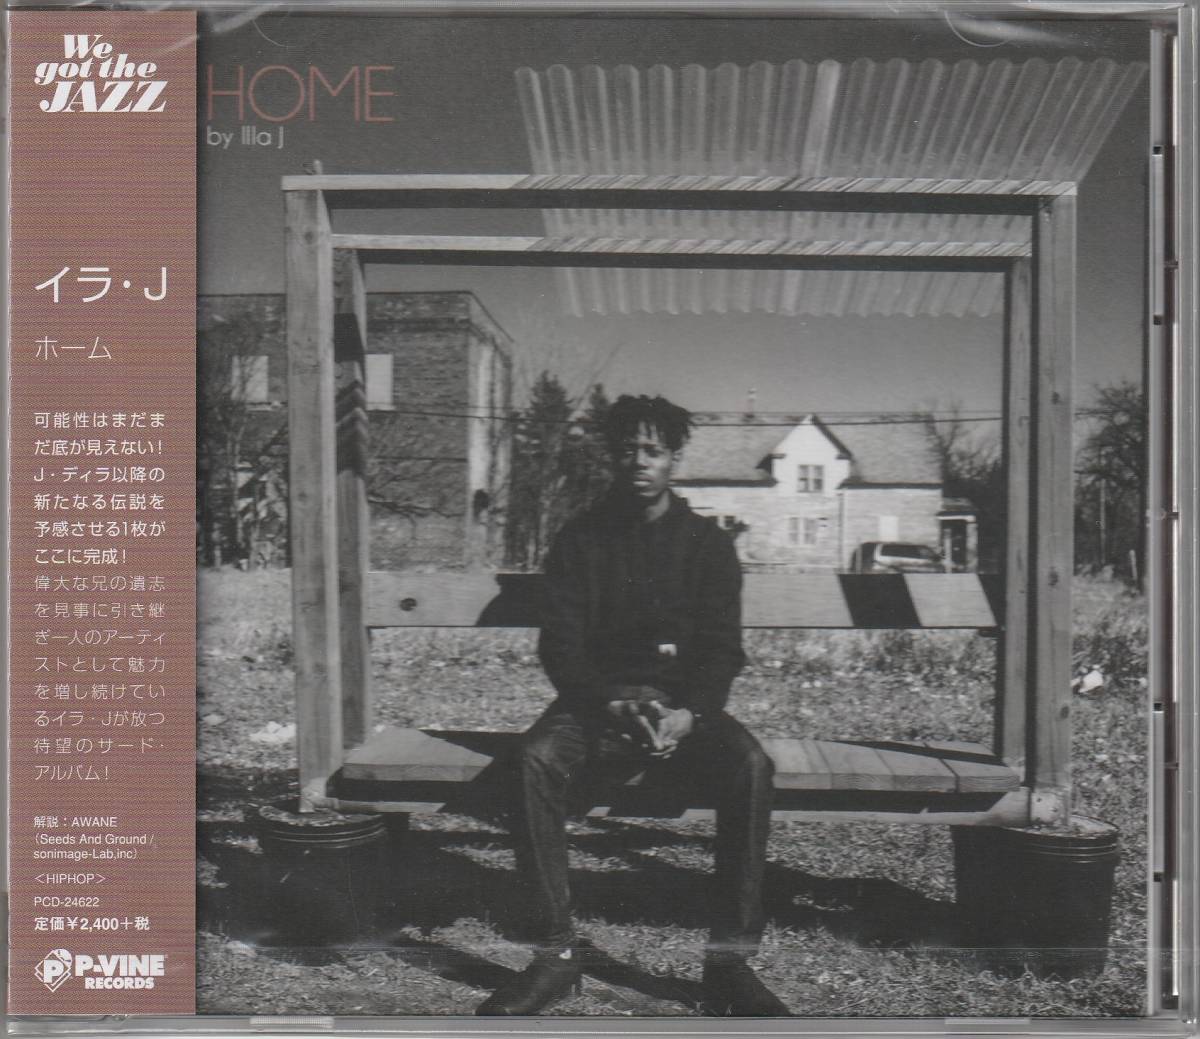  новый старый CD#HIPHOP# записано в Японии |ILLA J|Home|2017 год |J Dilla реальный .#Moka Only, Calvin Valentine, Anne gla